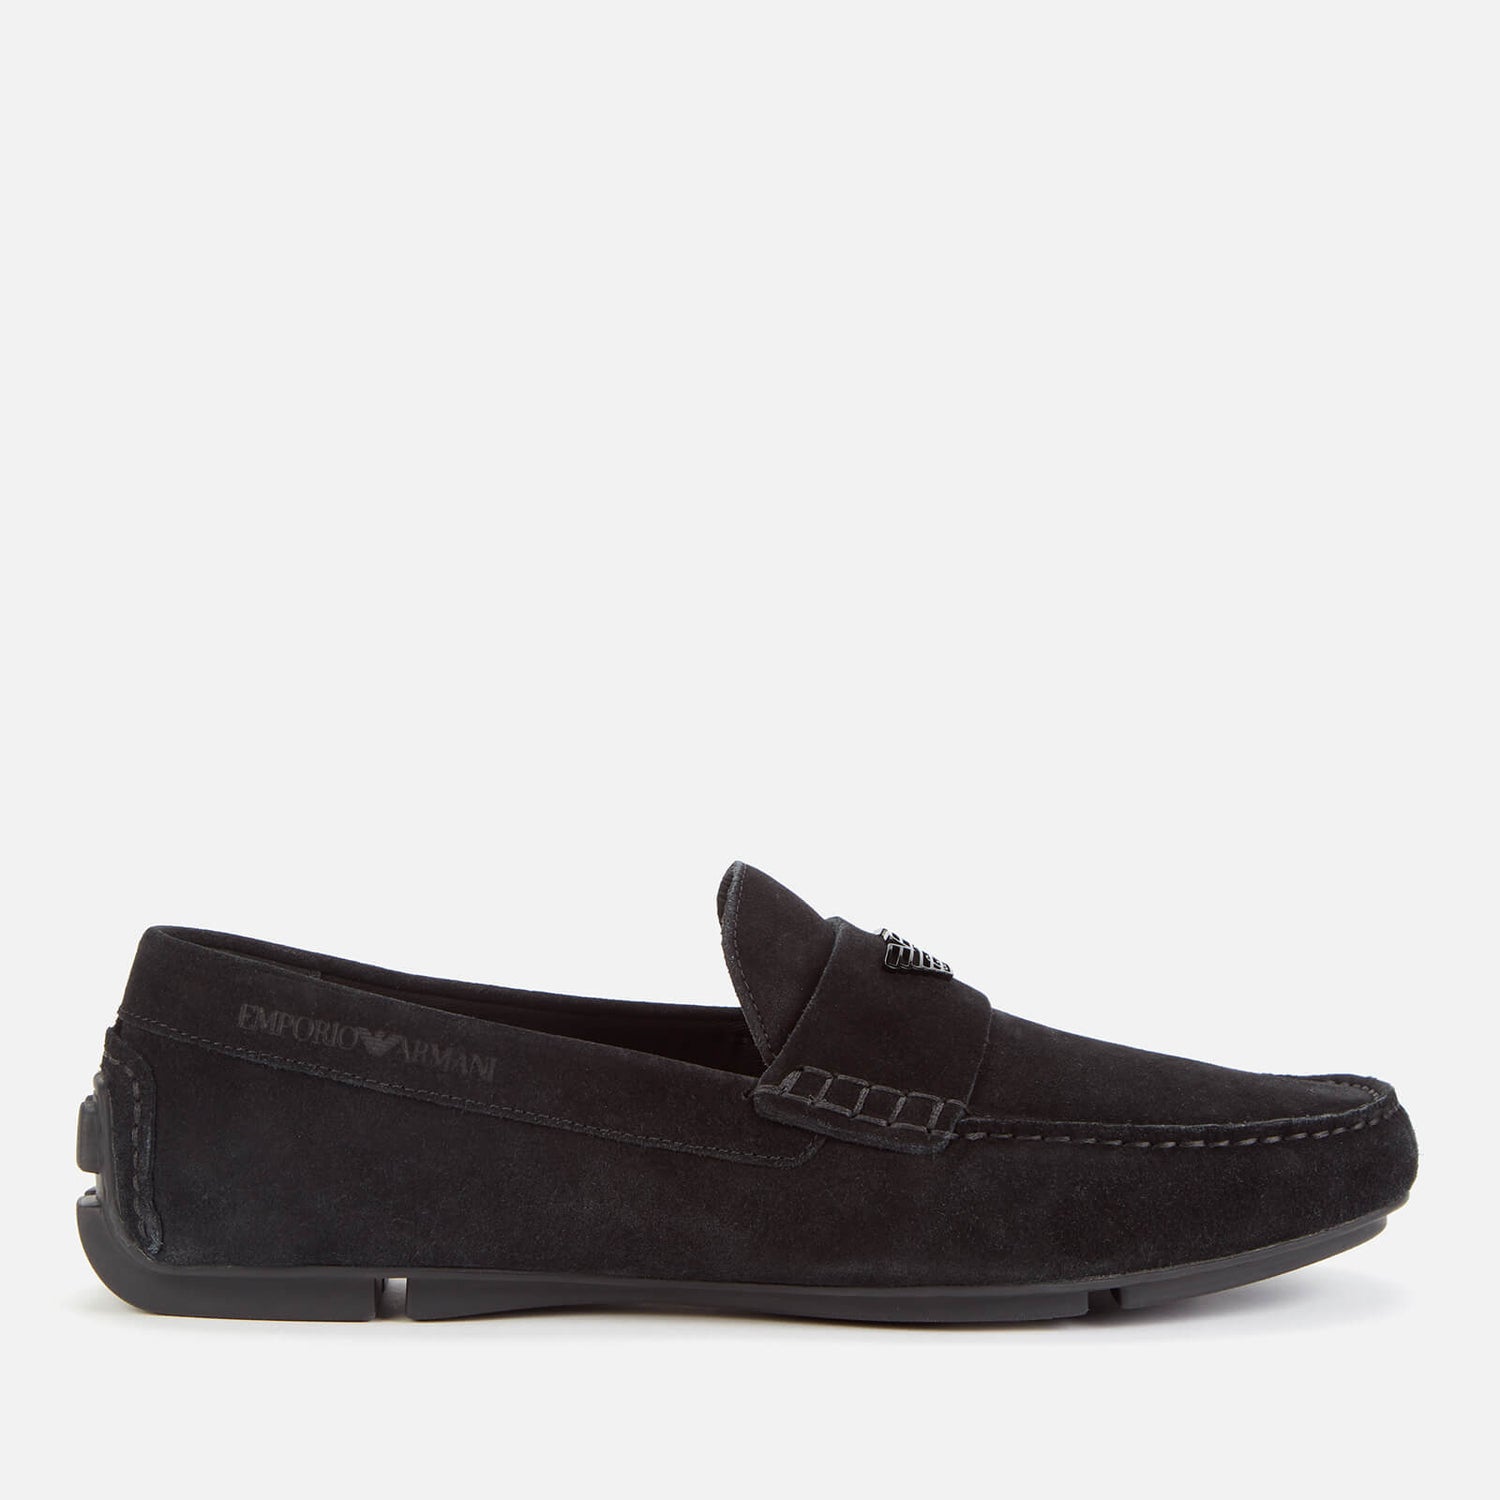 Emporio Armani Men's Suede Driving Shoes - Black